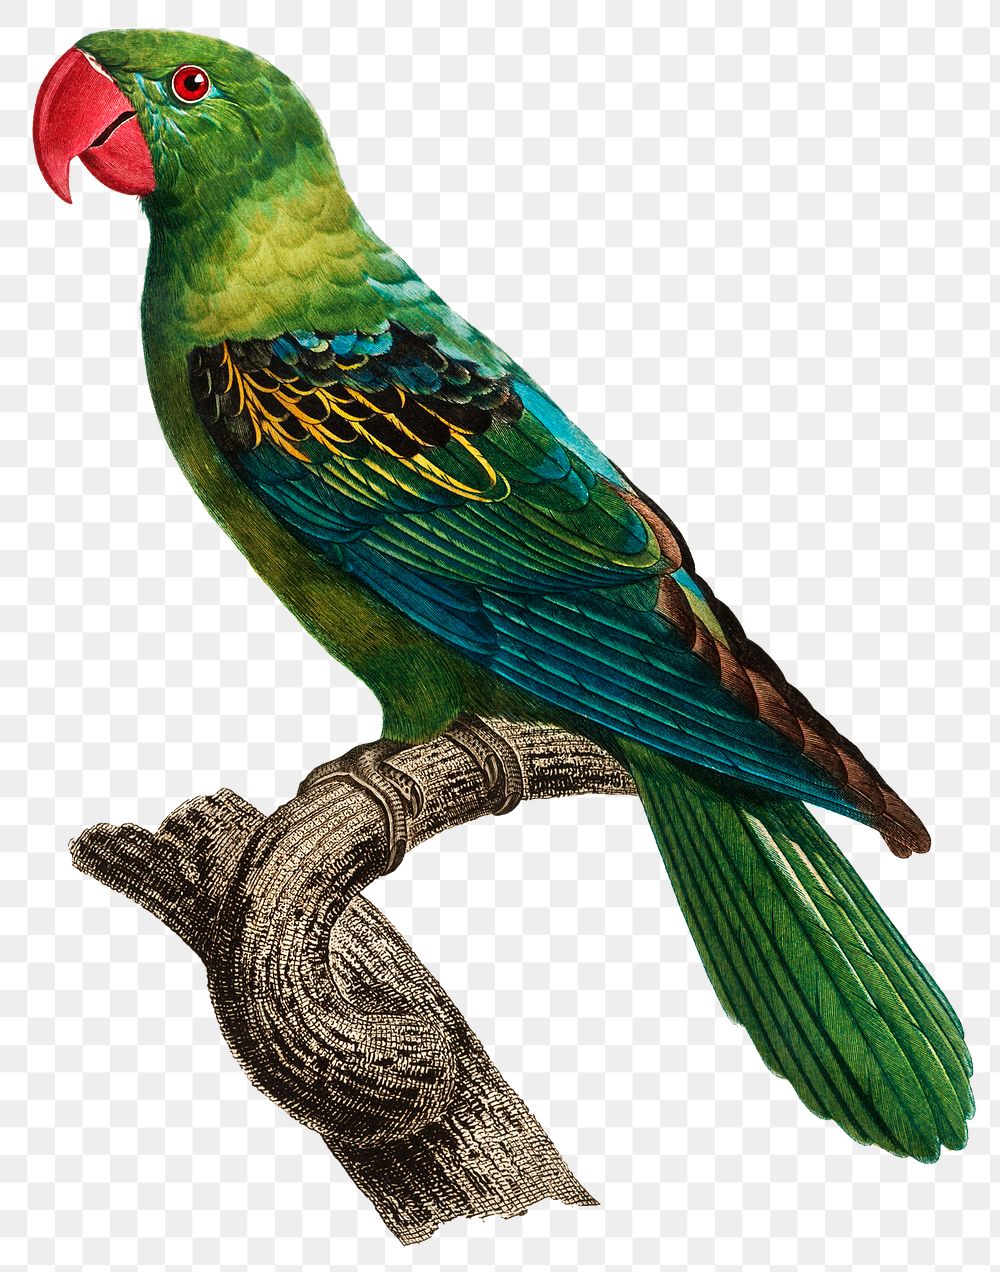 Grand-Billed Parrot vintage illustration PNG